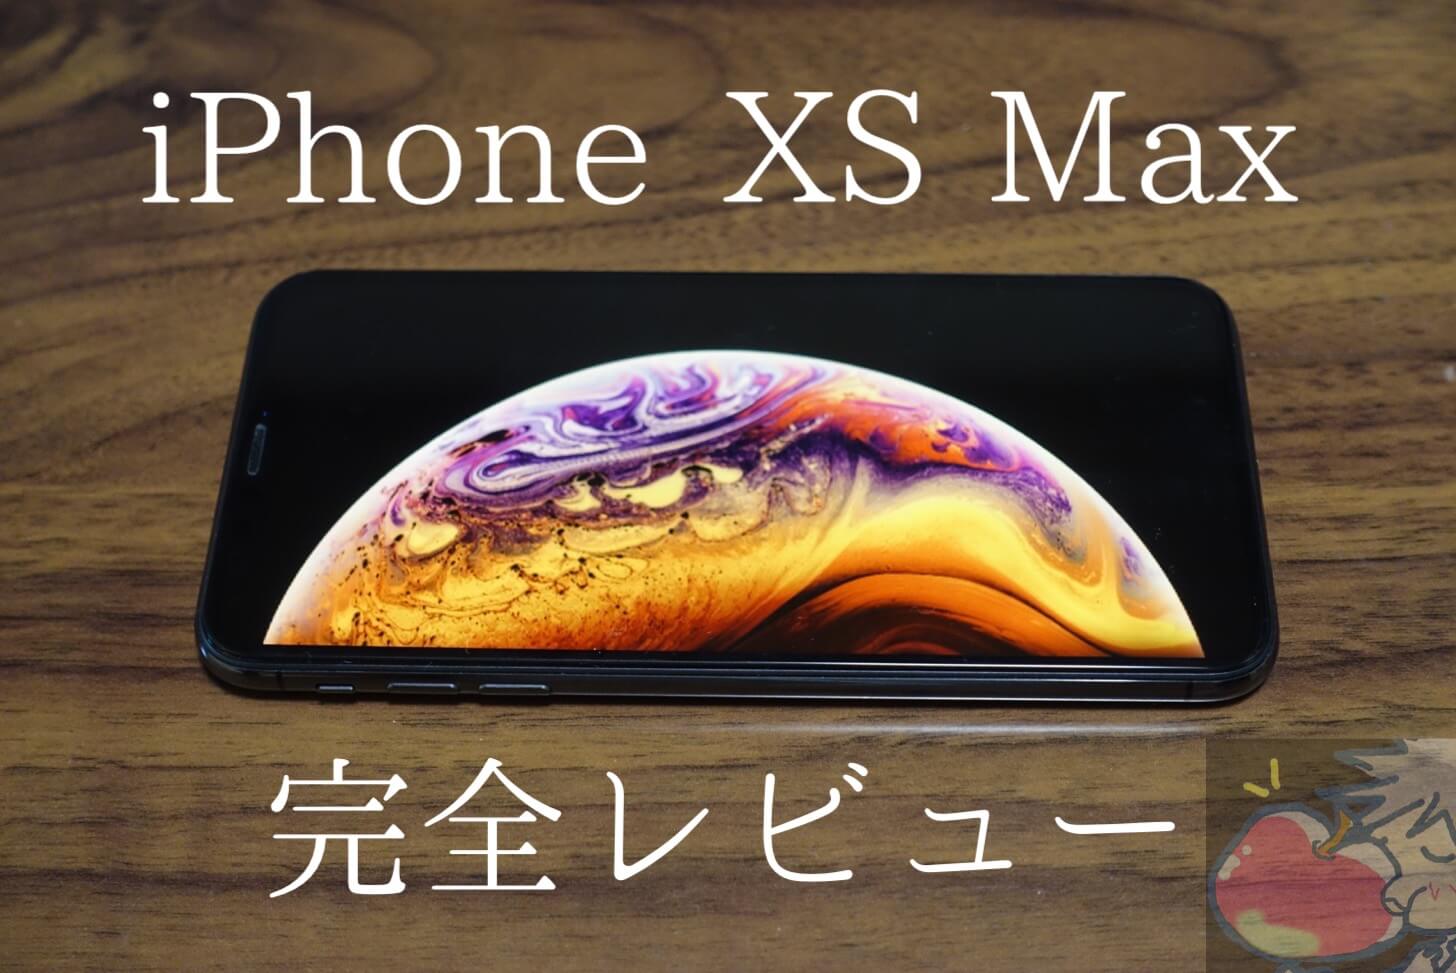 【48,000文字超】iPhone XS Max完全レビュー。17のメリット、12のデメリット